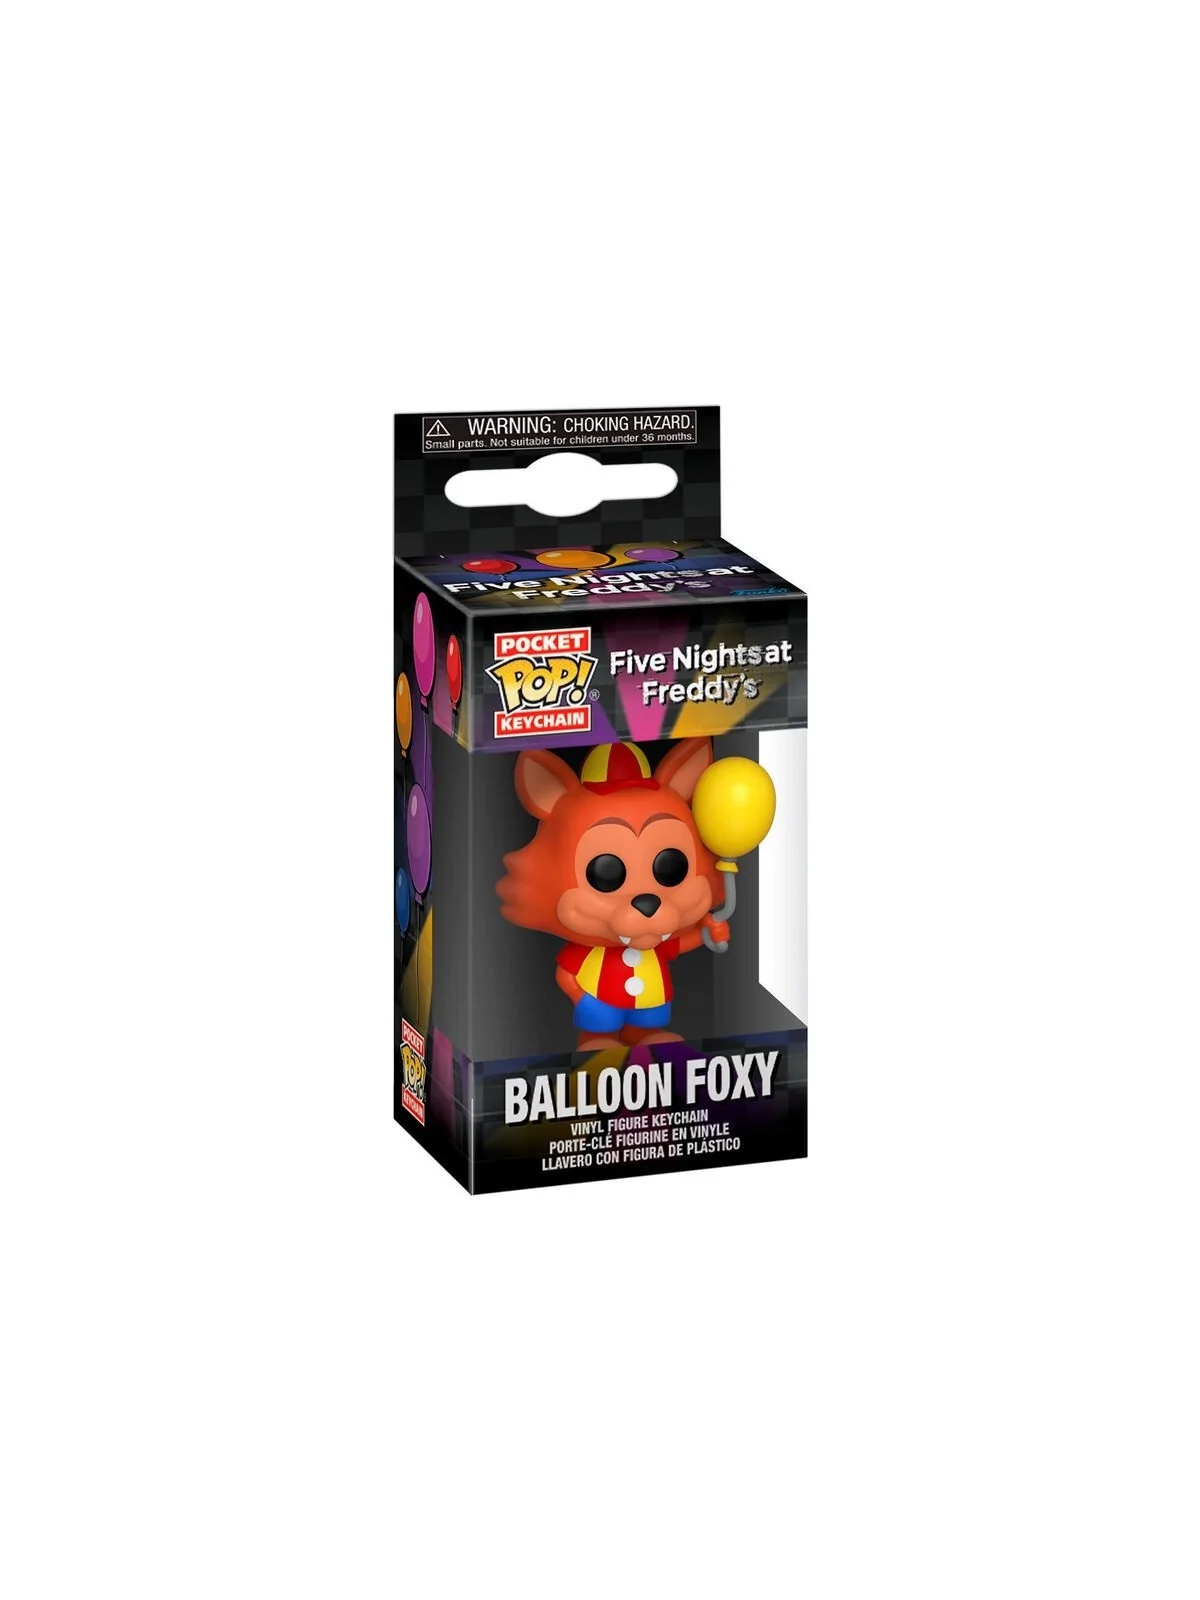 Comprar Llavero Funko Pocket POP! Five Nights at Freddys: Balloon Foxy